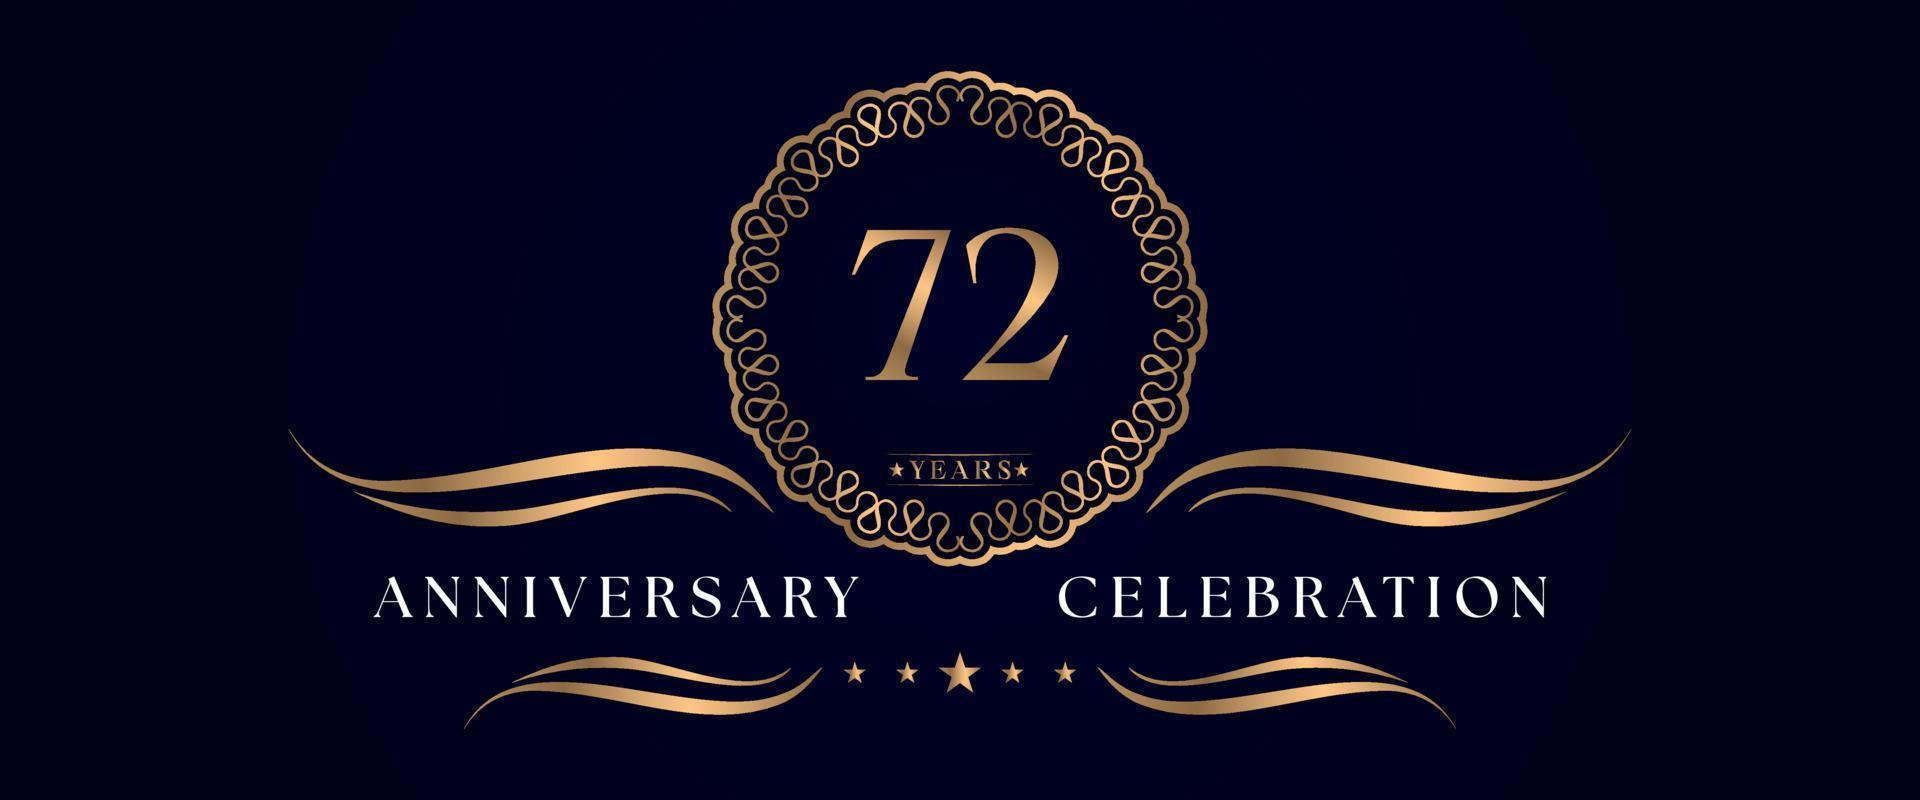 Celebrazione dell'anniversario di 72 anni con elegante cornice circolare isolata su sfondo blu scuro. disegno vettoriale per biglietto di auguri, festa di compleanno, matrimonio, festa evento, cerimonia. Logo dell'anniversario di 72 anni.